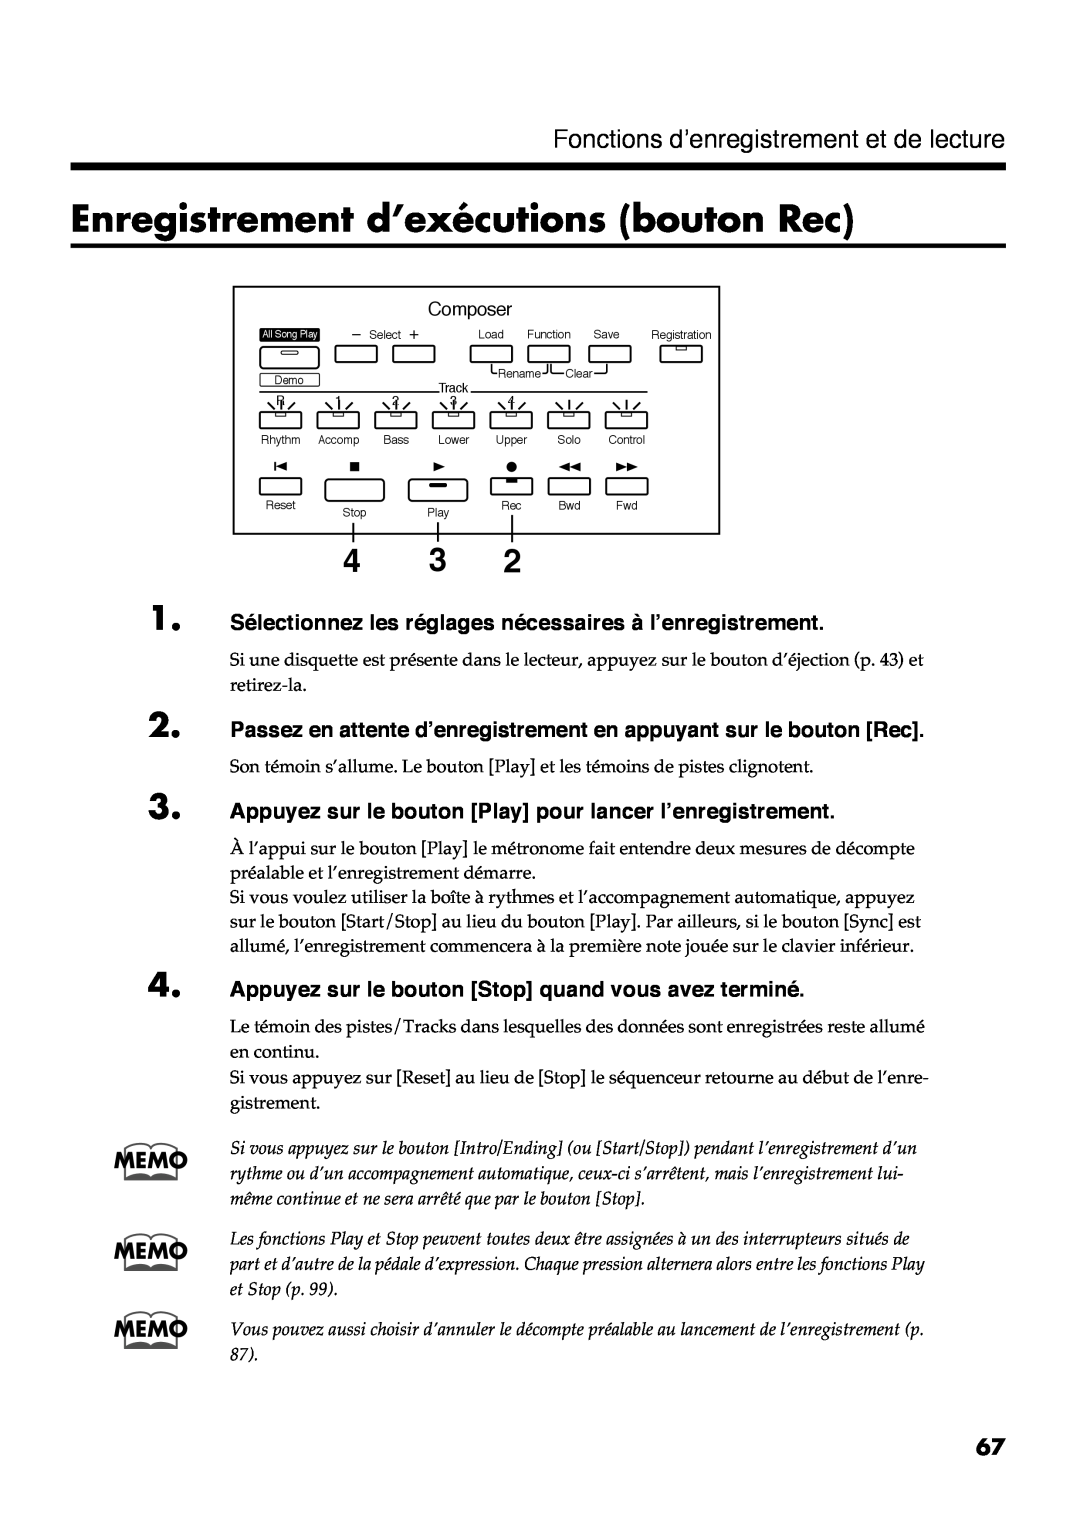 Roland AT30R manual Enregistrement d’exécutions bouton Rec, Fonctions d’enregistrement et de lecture 